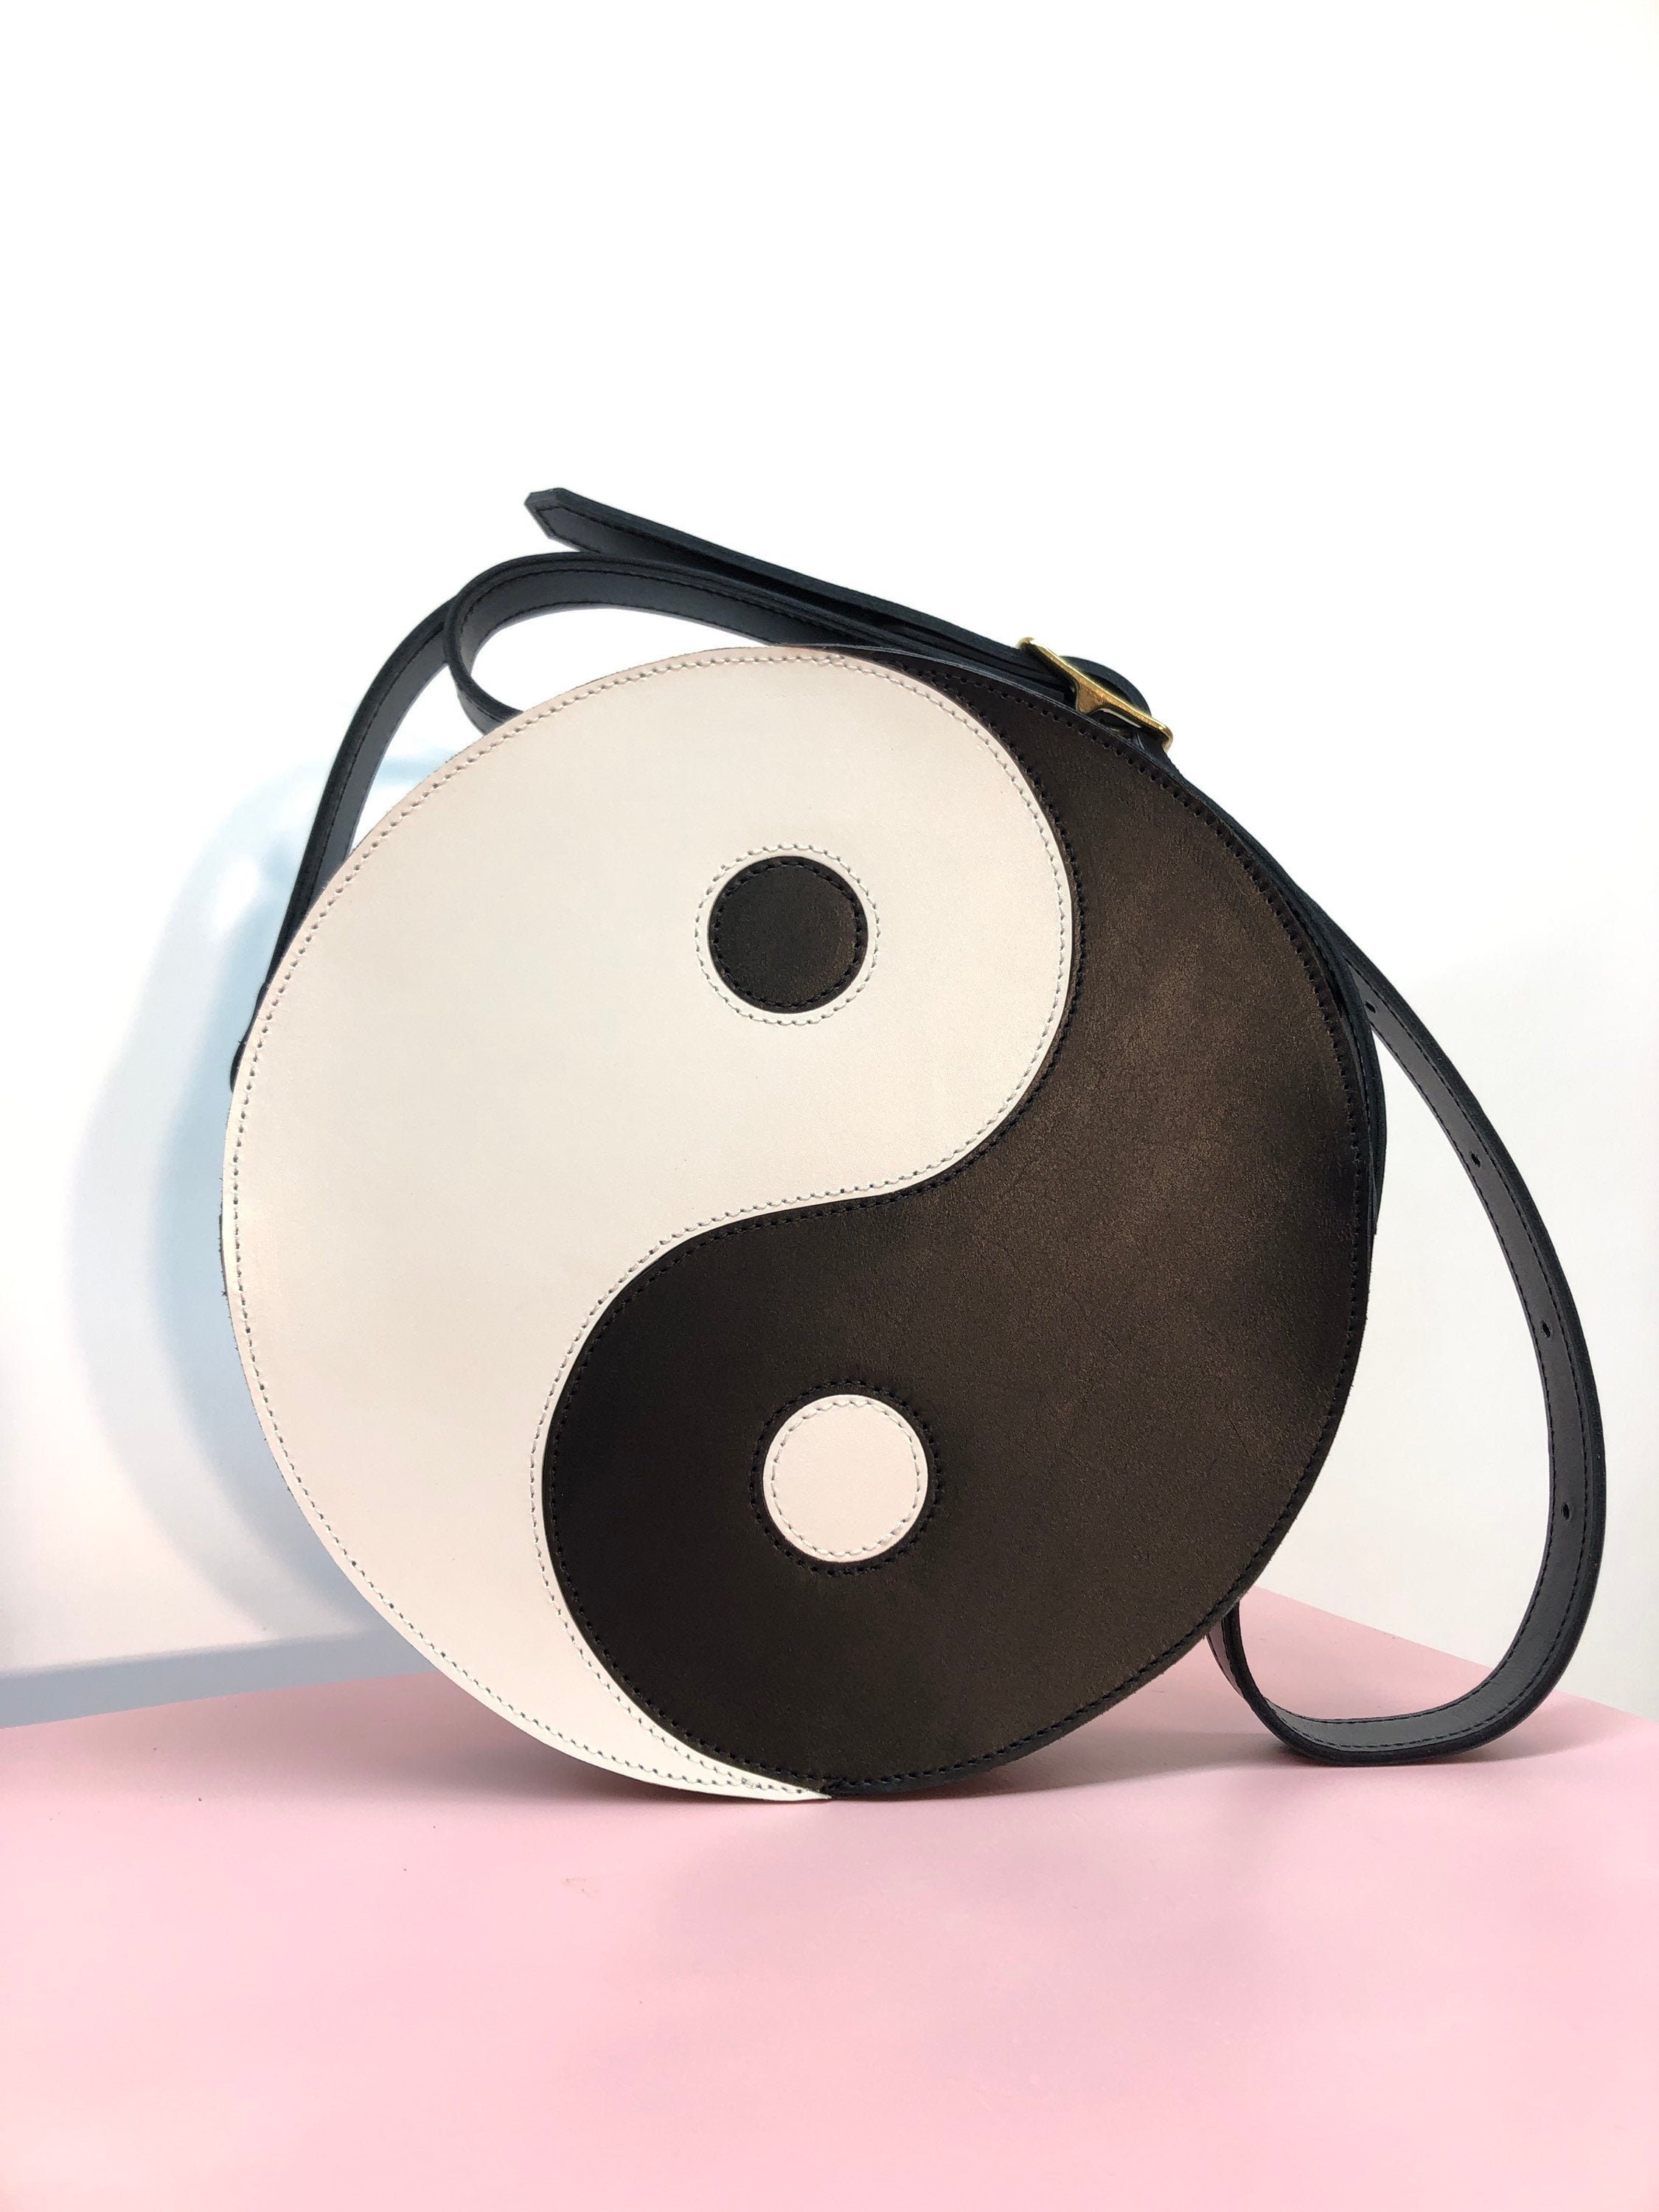 Yin Yang handbag hanger for restaurant